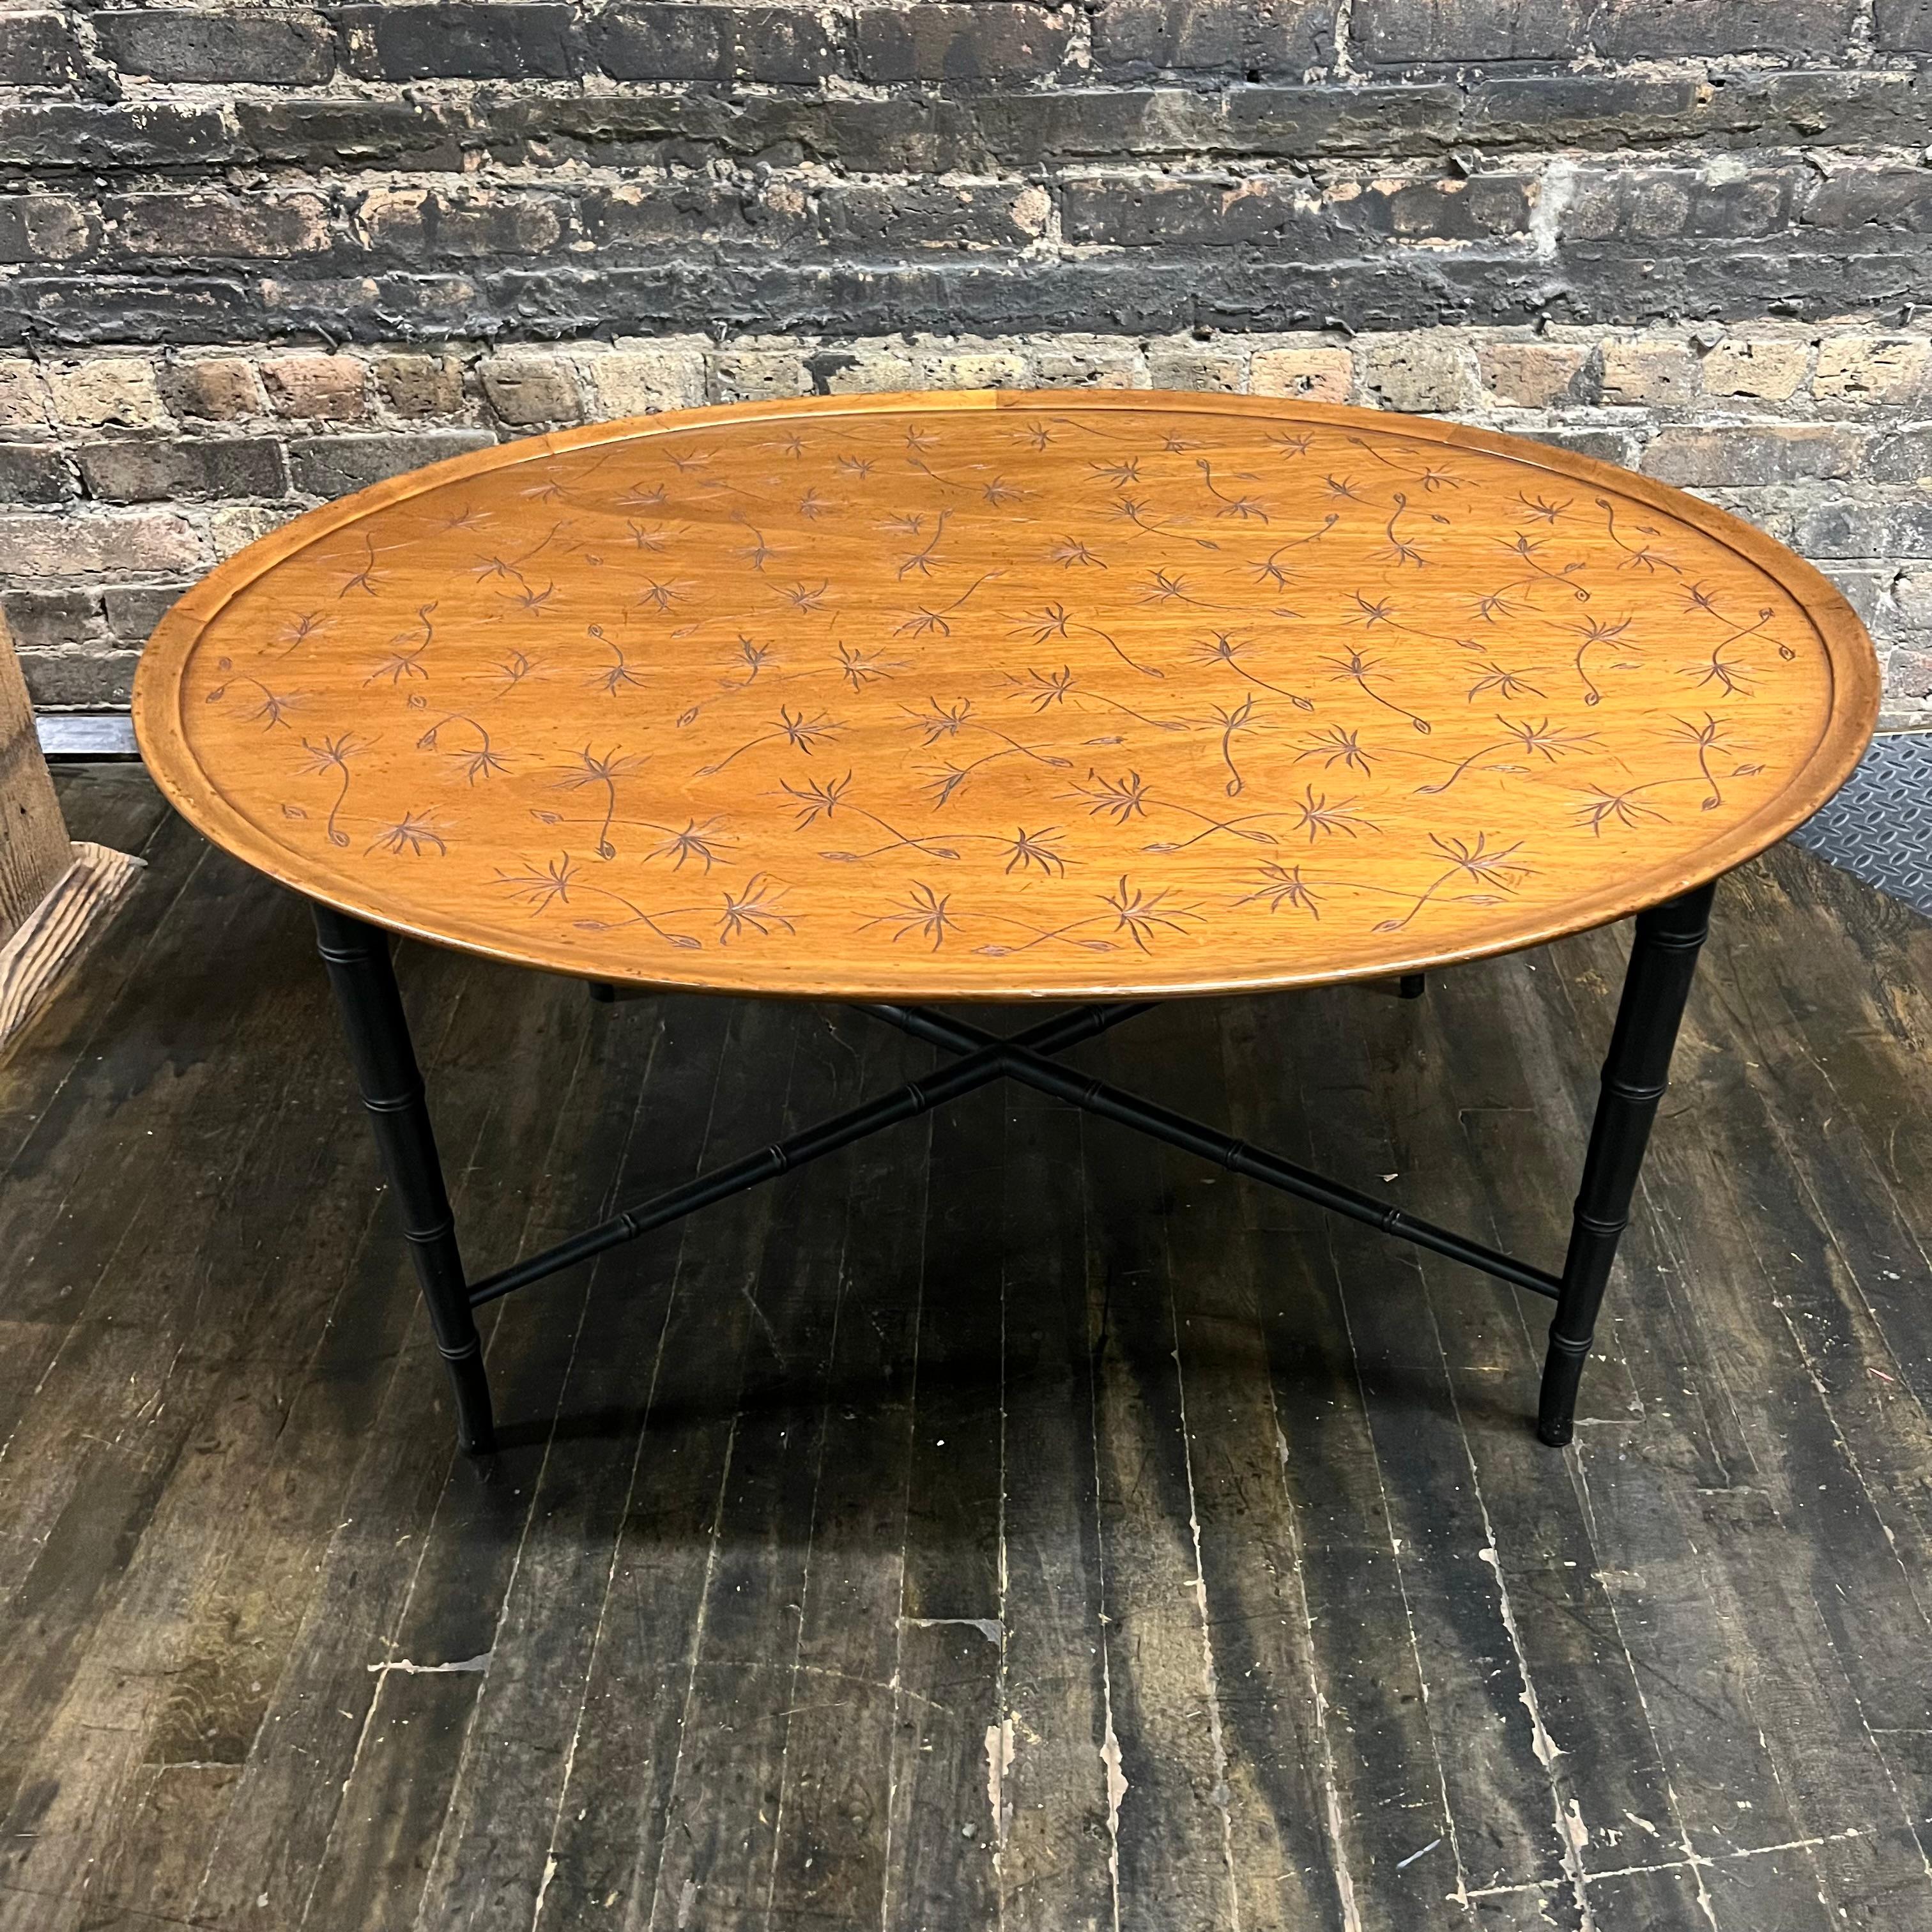 Ravissante table basse du milieu du siècle par Kittinger Furniture Company (Buffalo, NY). Cette table ovale a un beau plateau en noyer incisé d'un motif de pissenlit (en noir). La base laquée noire présente un style en faux bambou avec une traverse